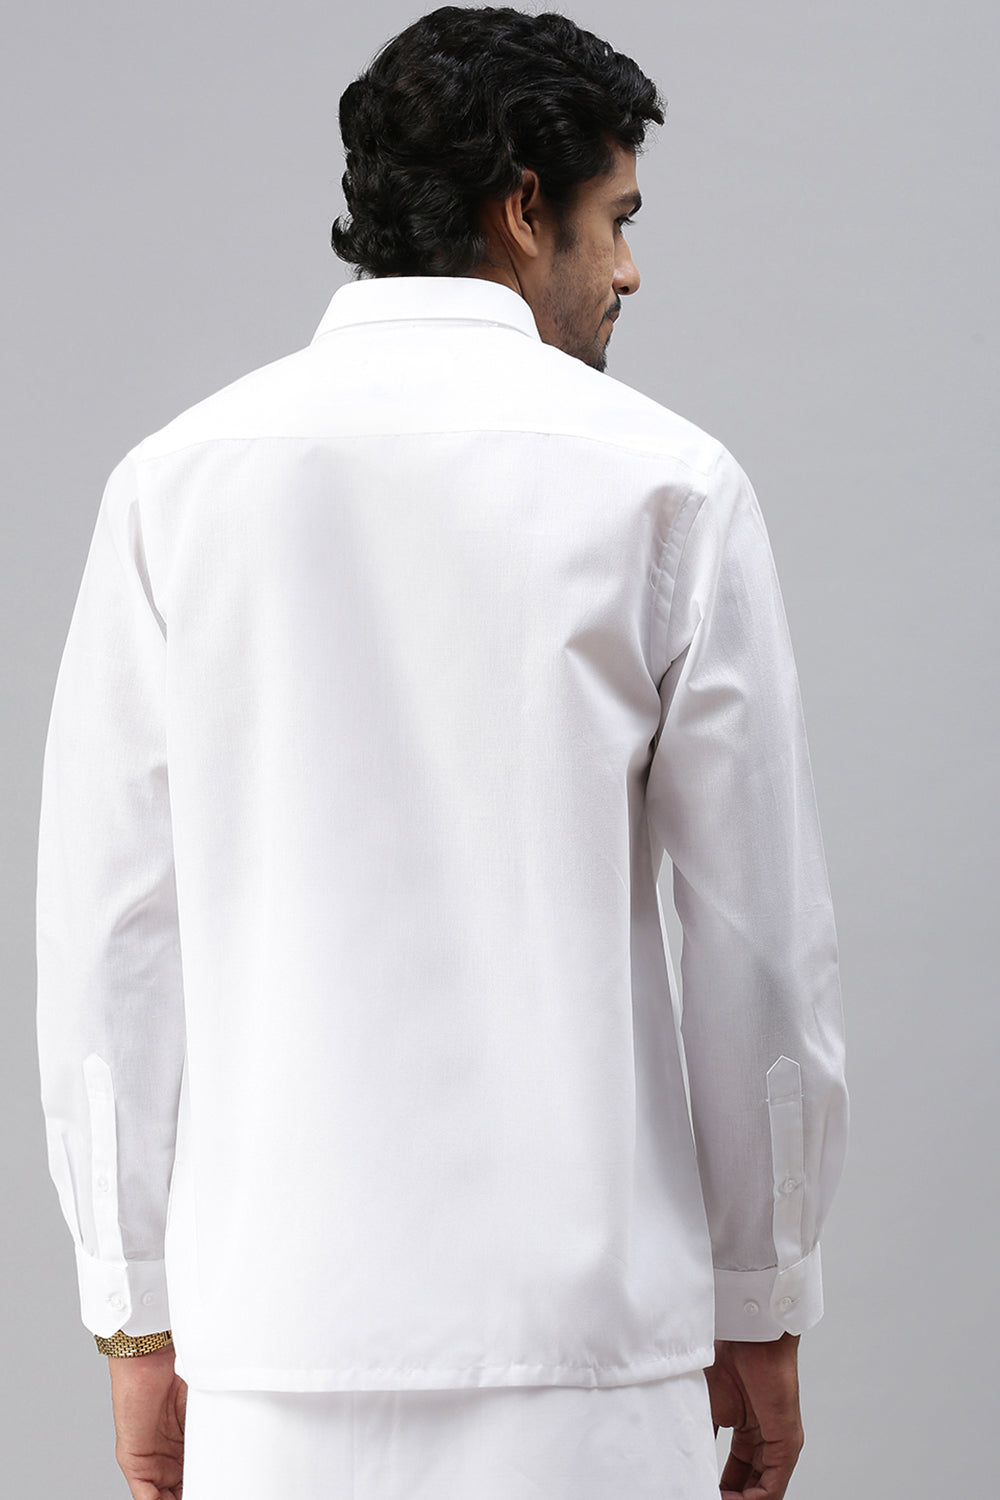 Mens Spill Resistant White Shirt Full Sleeves Elite Cotton-Back view